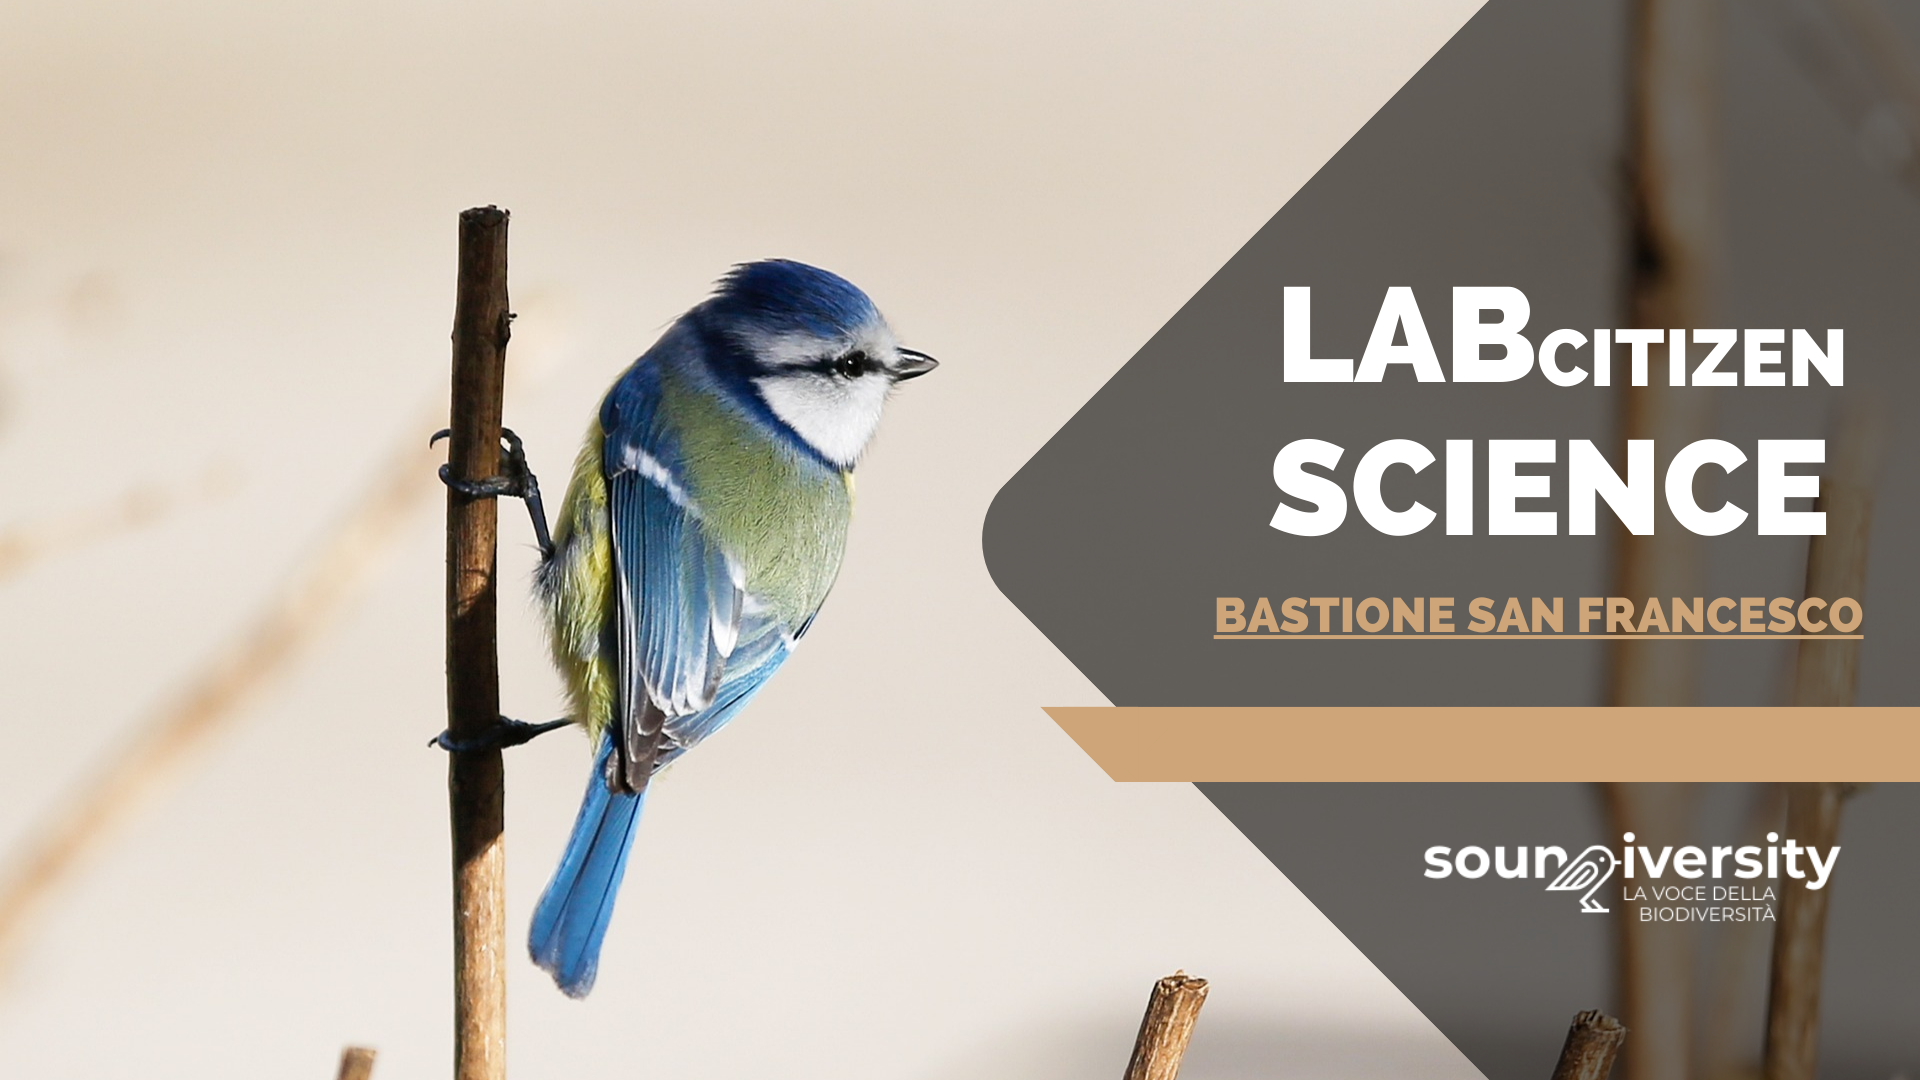 Laboratorio di citizen science al Bastione San Francesco (VR)